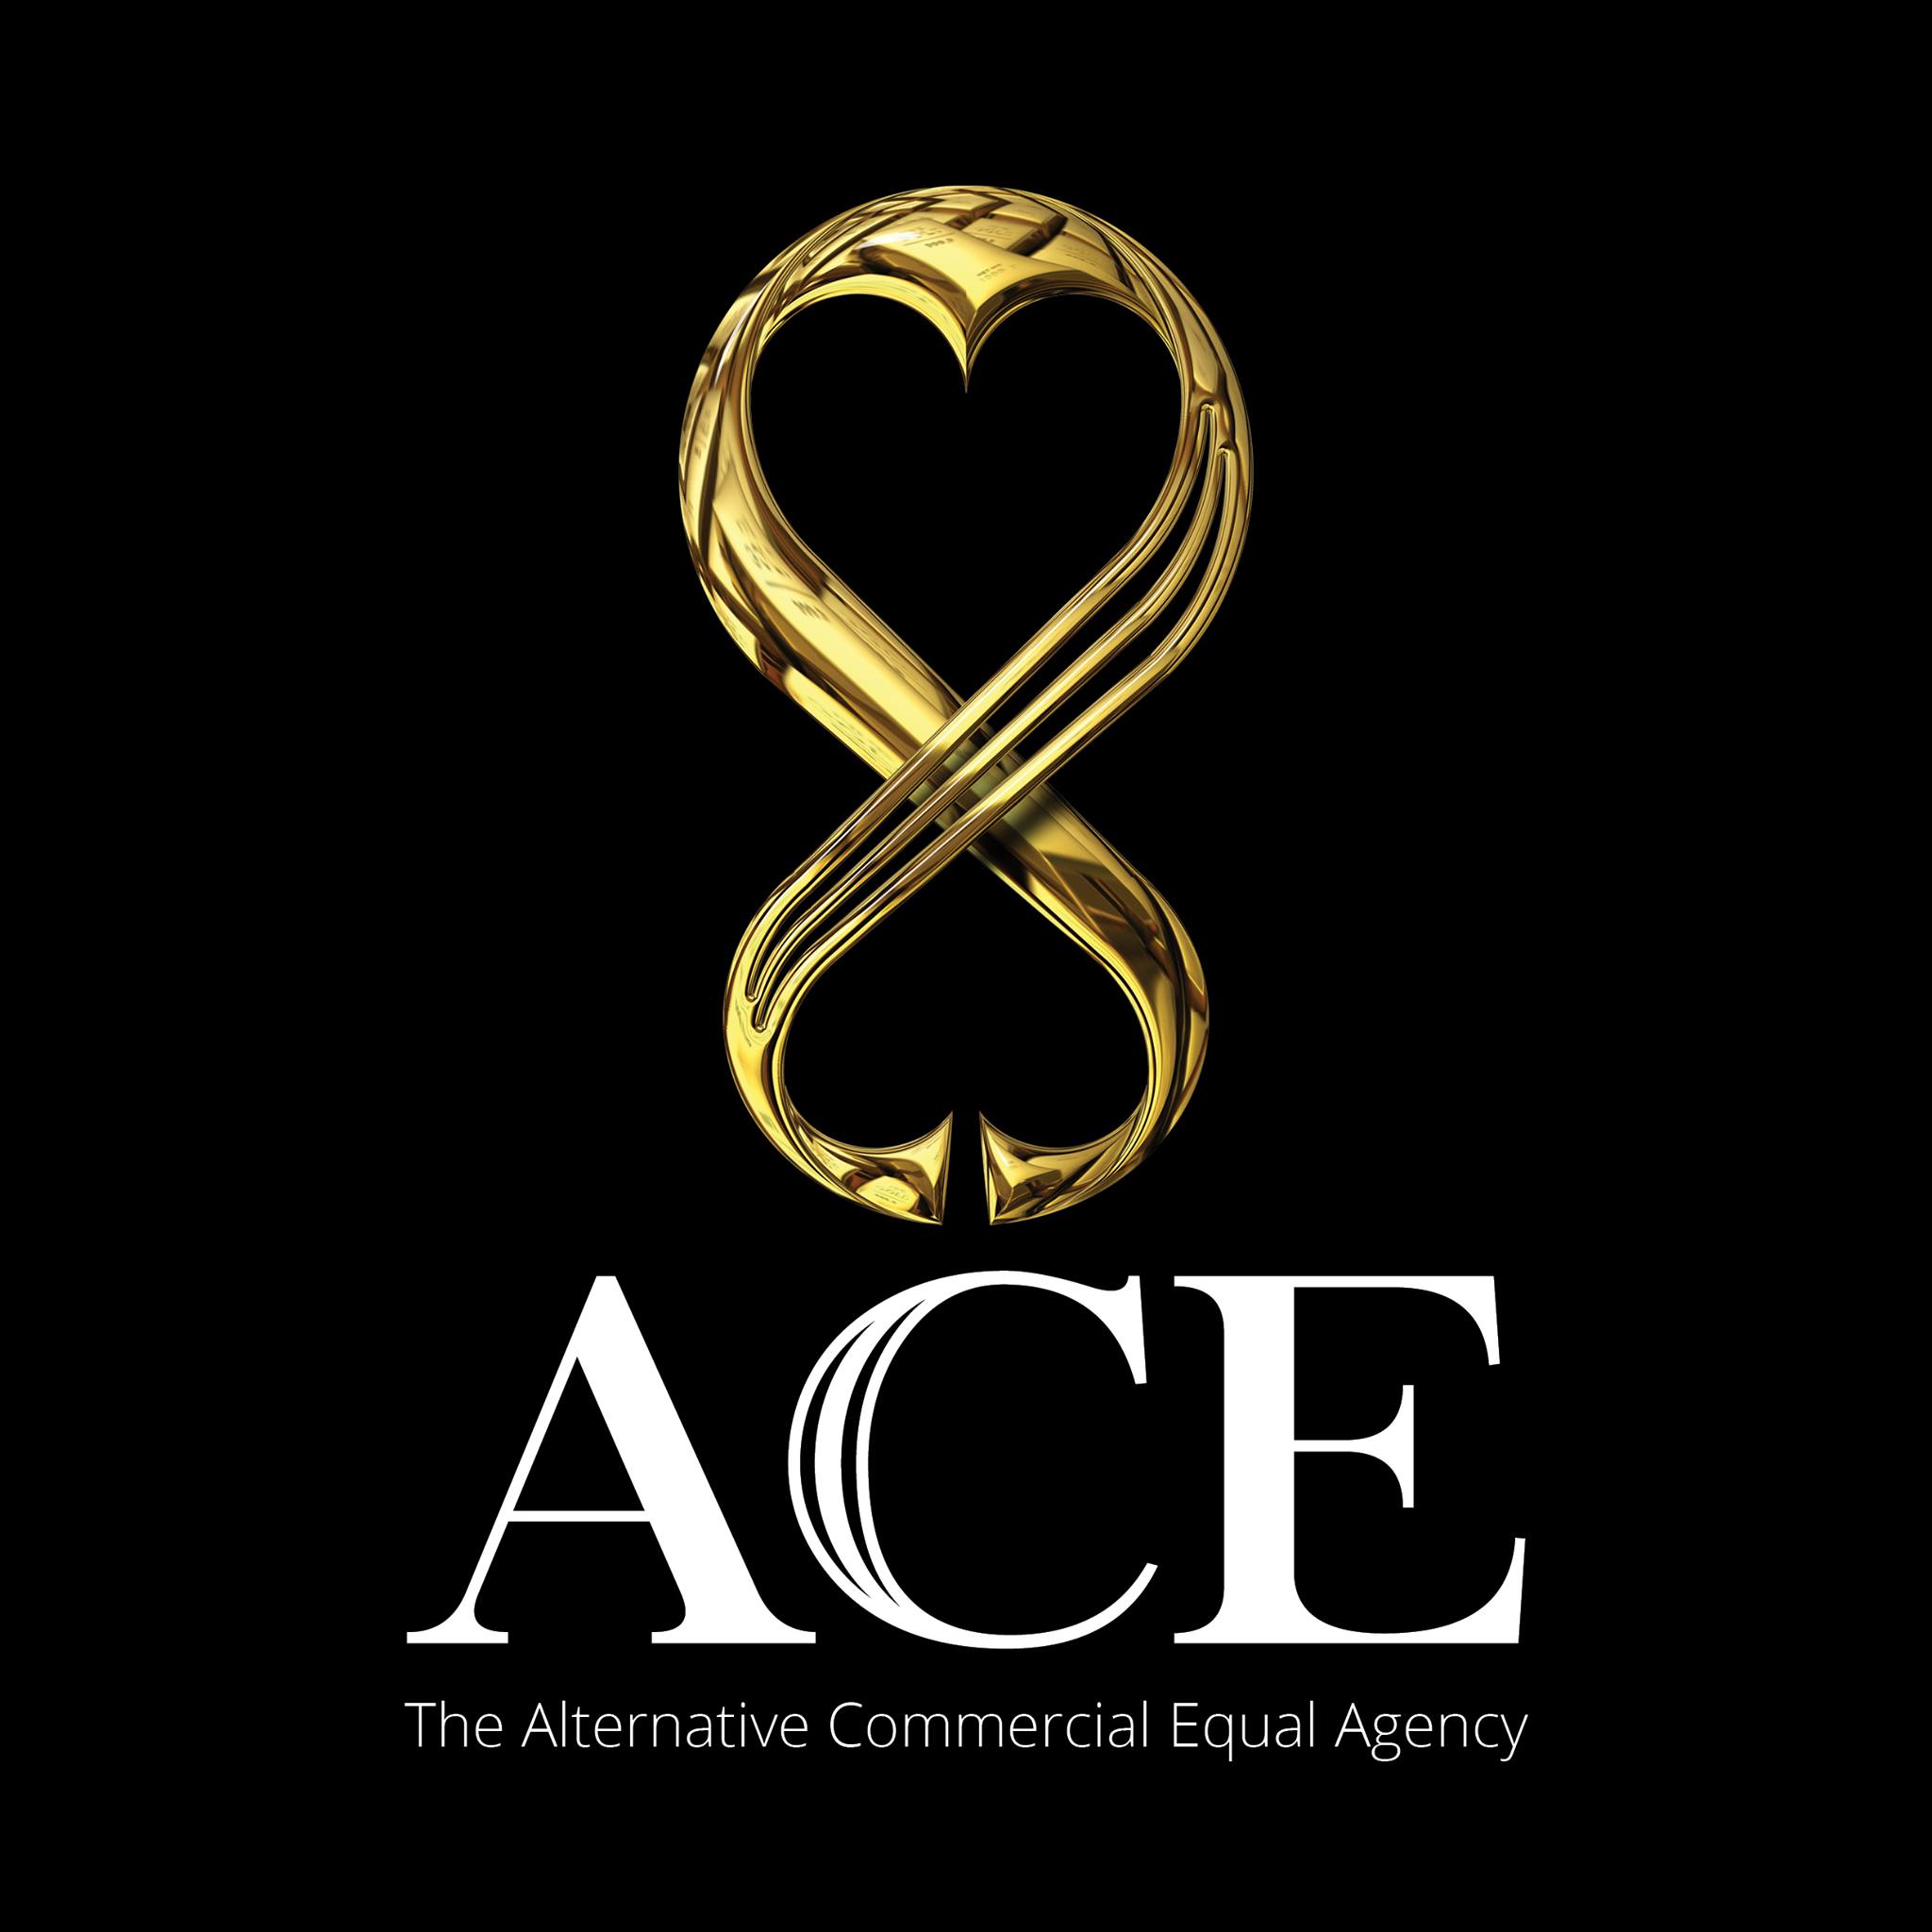 Ace Agencies